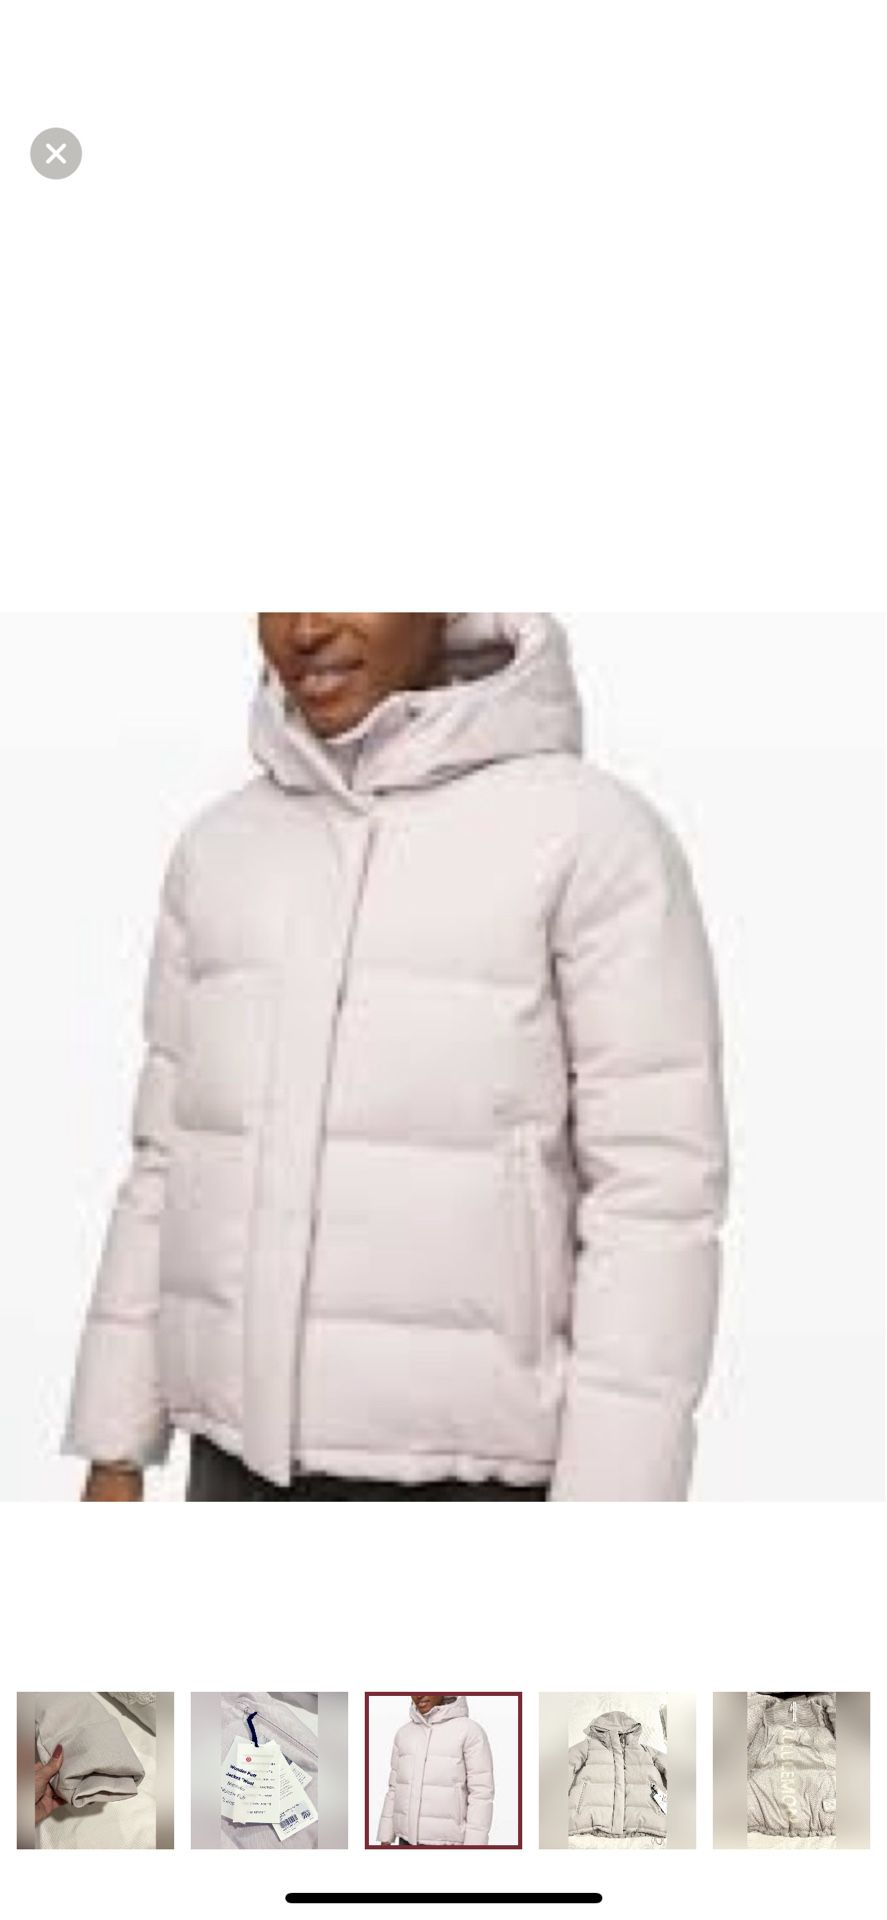 NWT Lululemon Wunder Puff Jacket *Wool Heathered Light Chrome Size 8